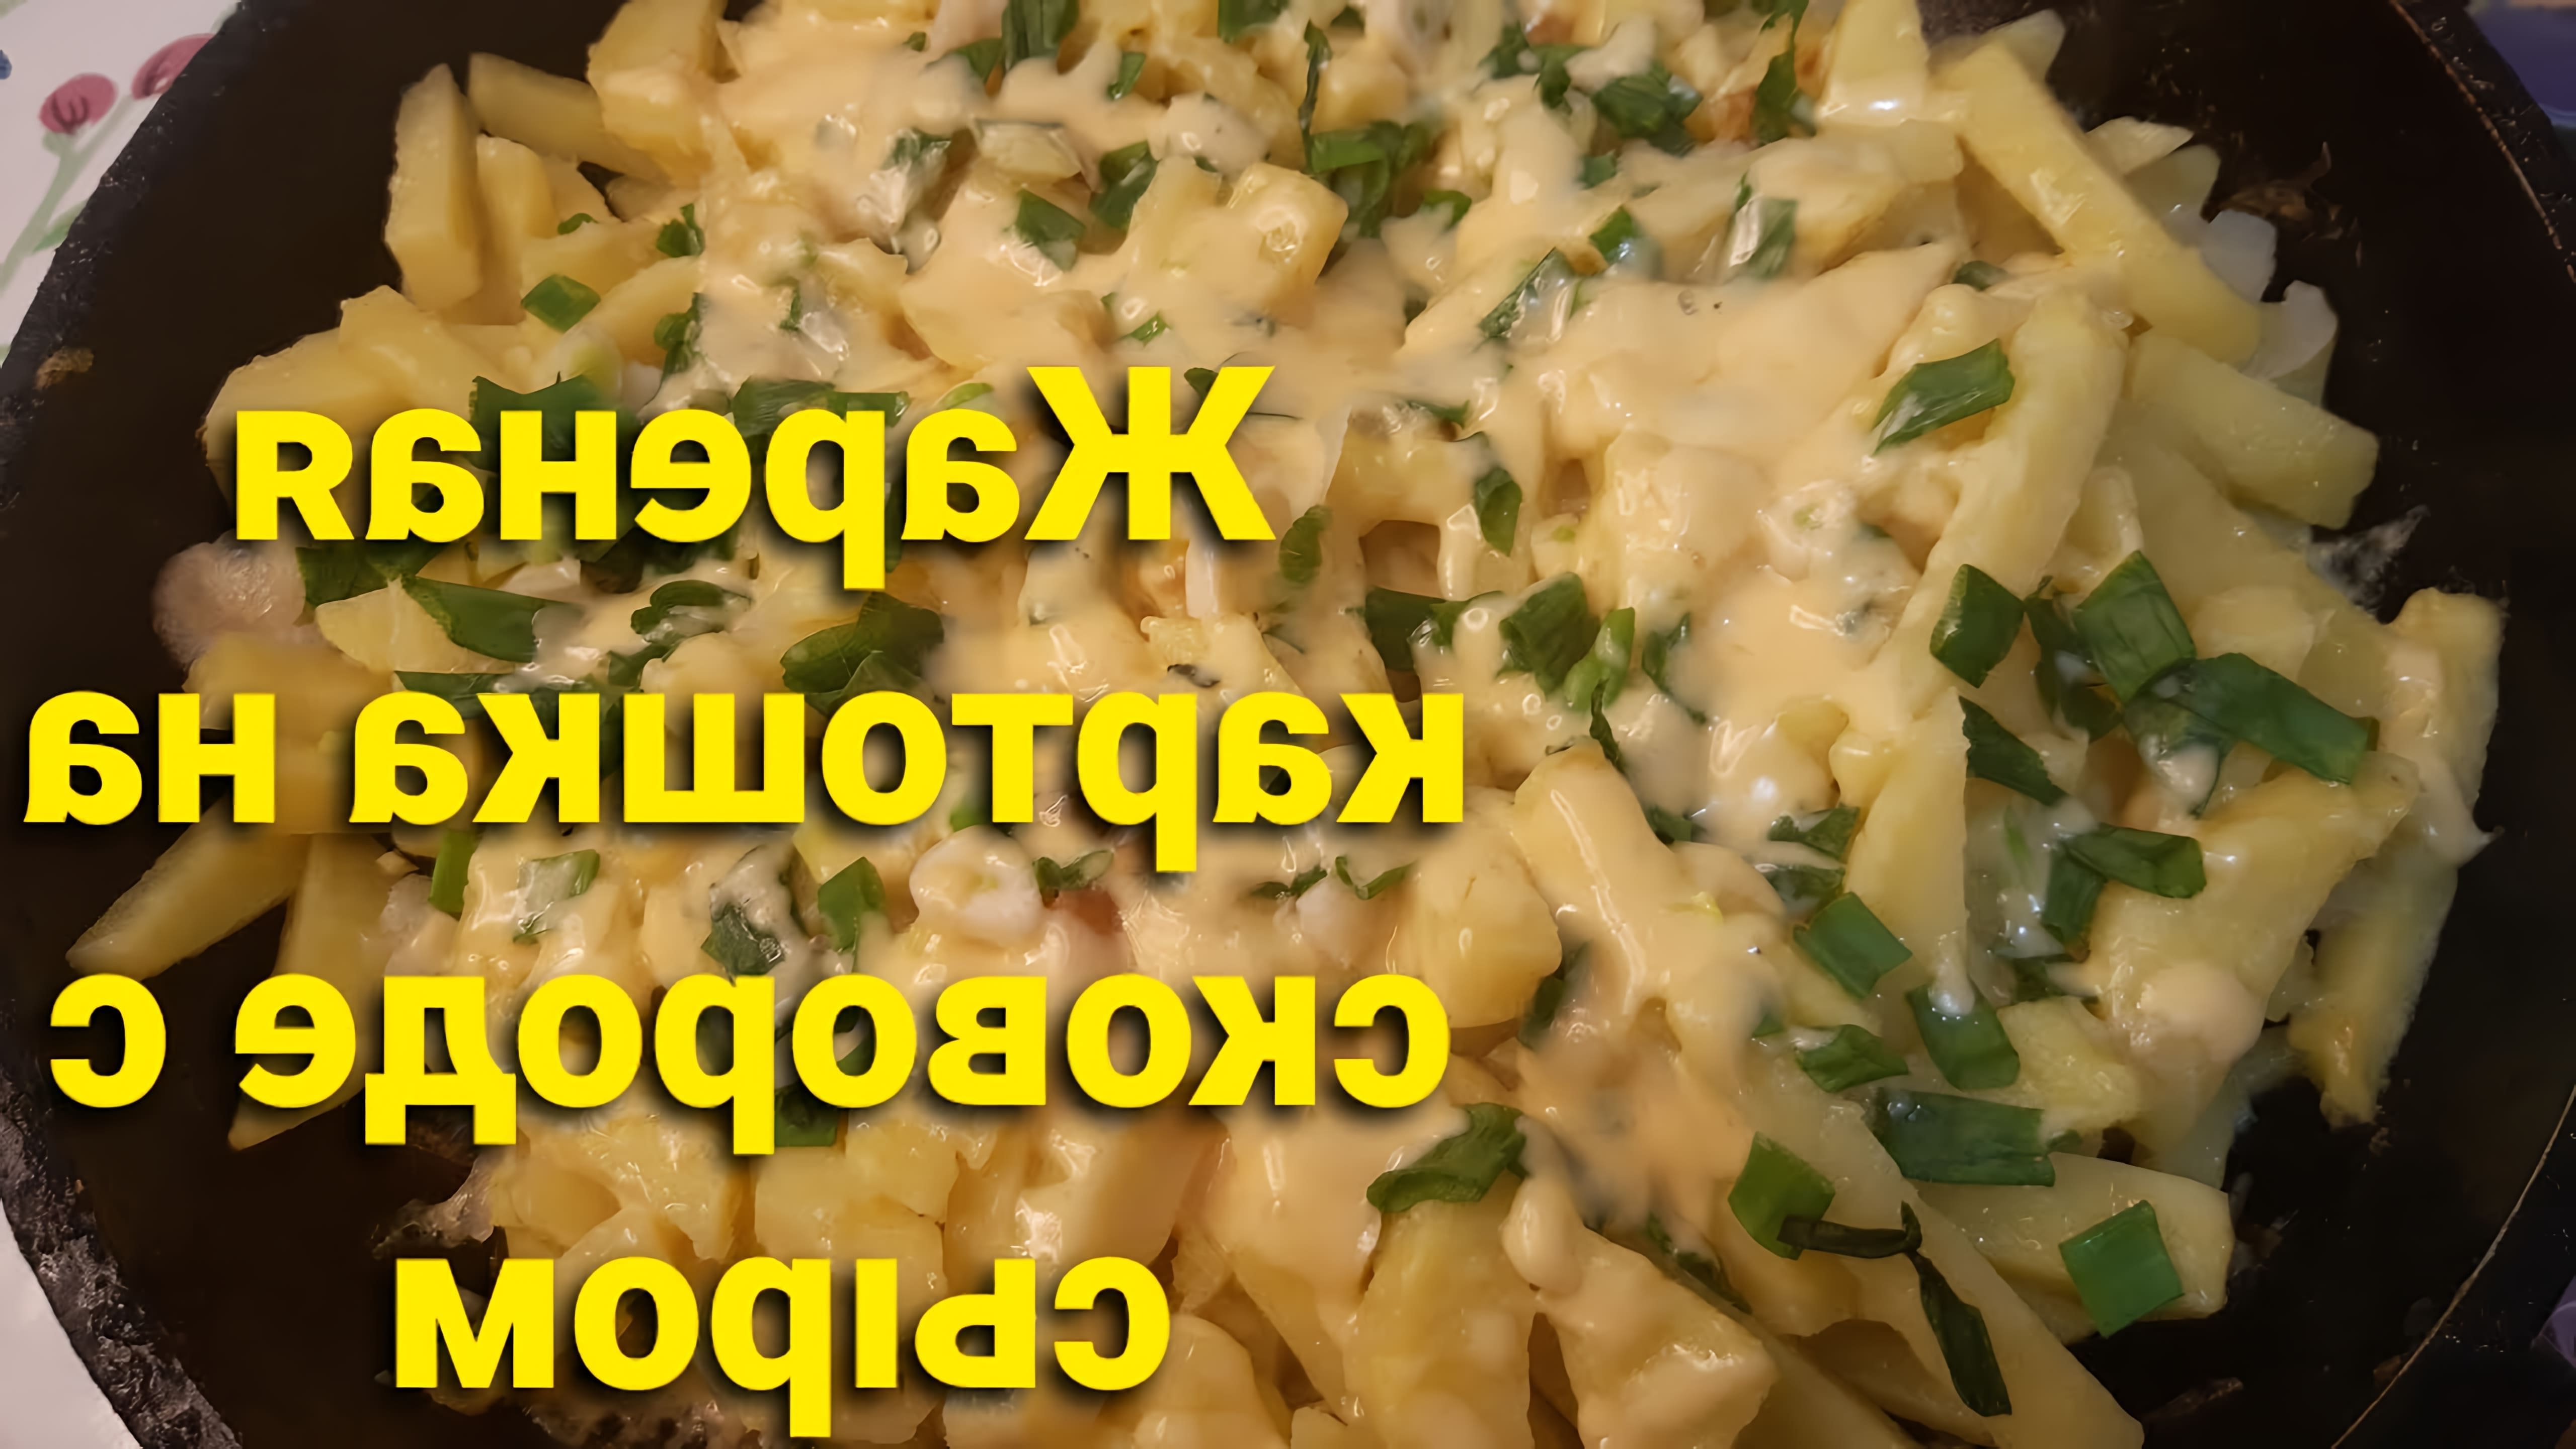 В этом видео демонстрируется процесс приготовления жареной картошки с сыром на сковороде